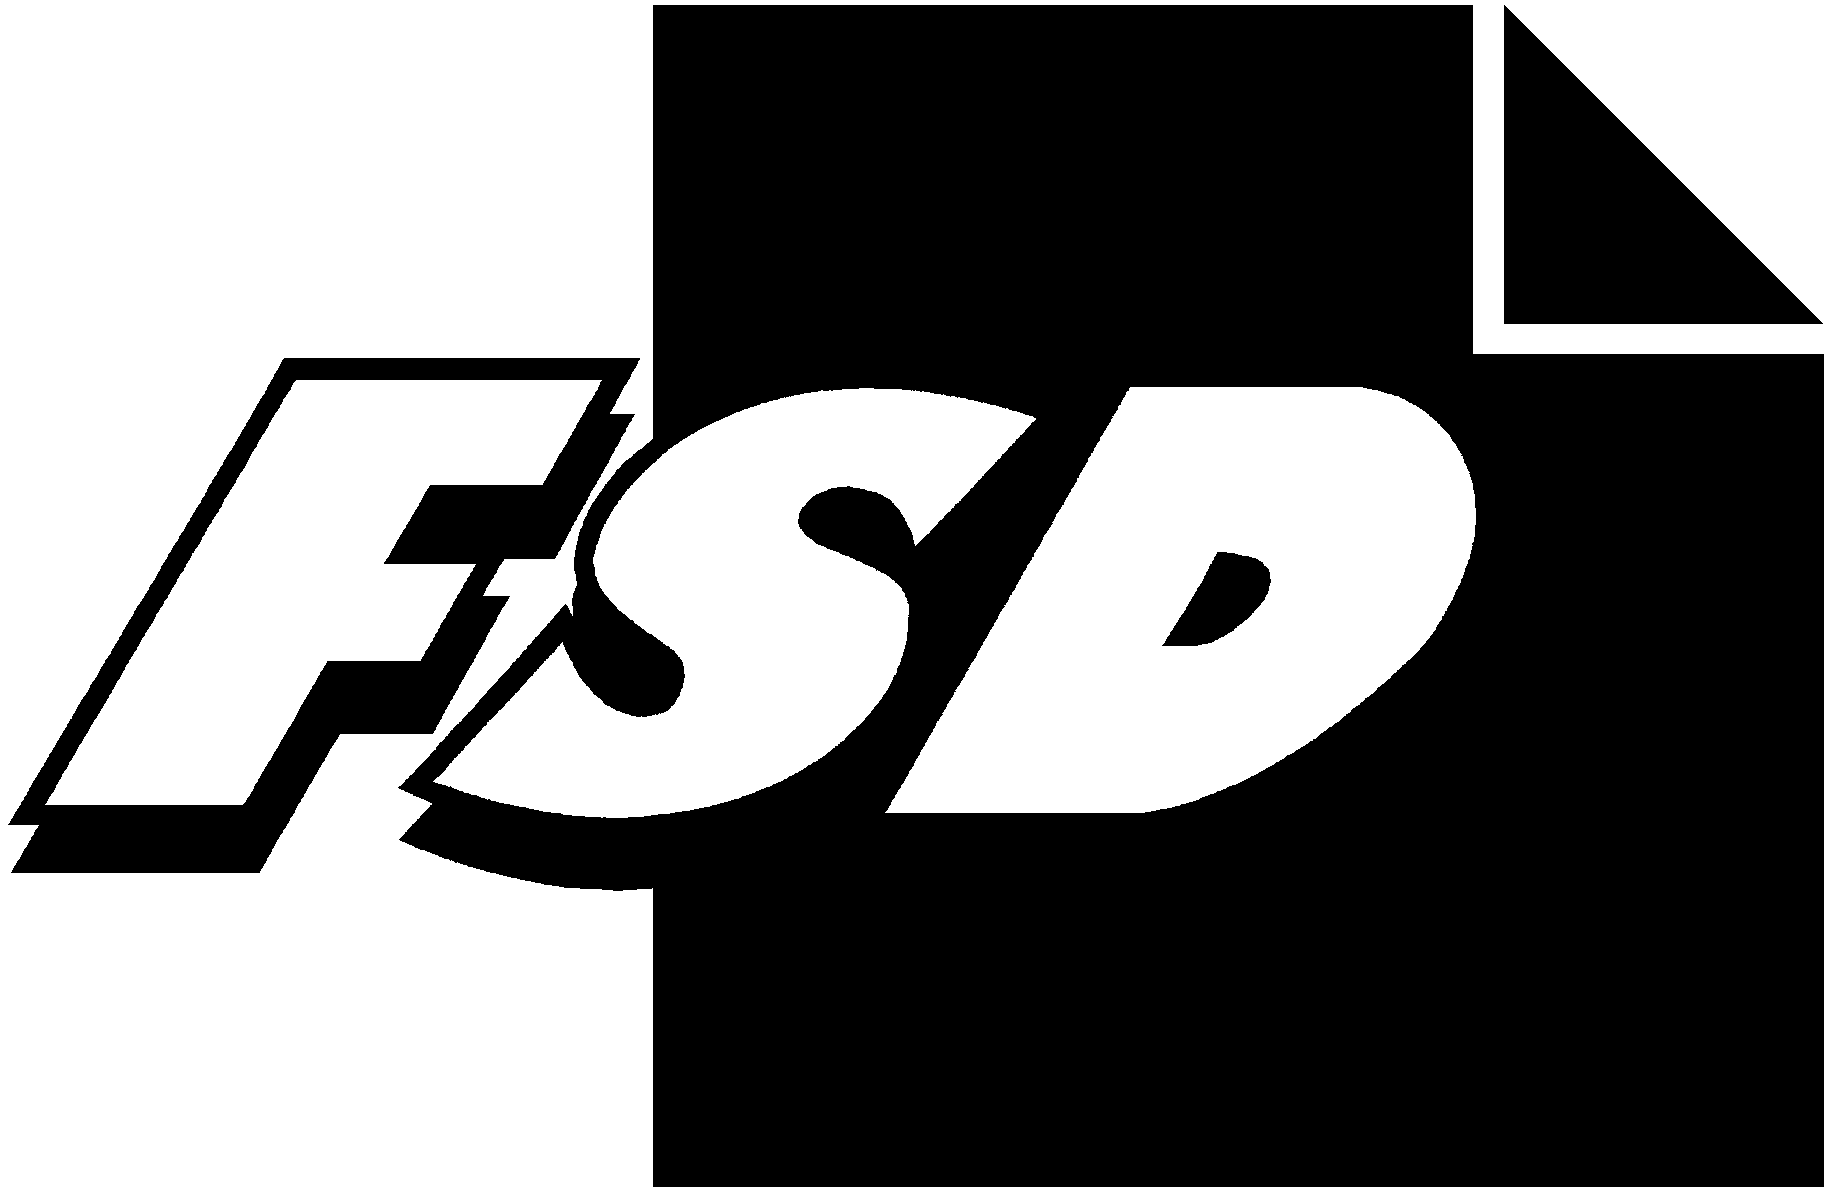 FSD2029 Seurakuntien työntekijäkysely 2002